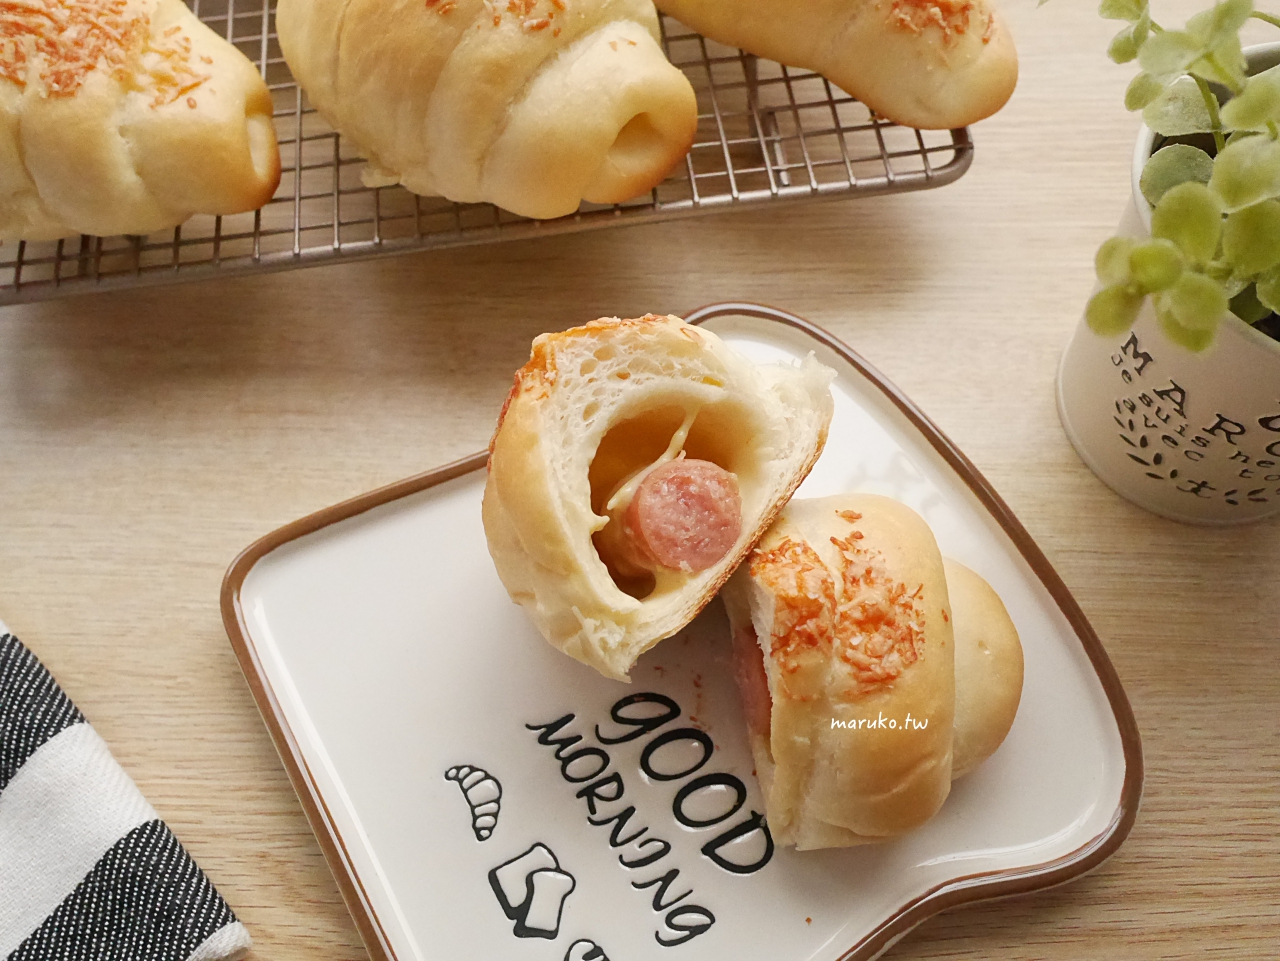 【食譜】熱狗麵包捲 麵包捲內餡分享 可當作早餐或點心的麵包